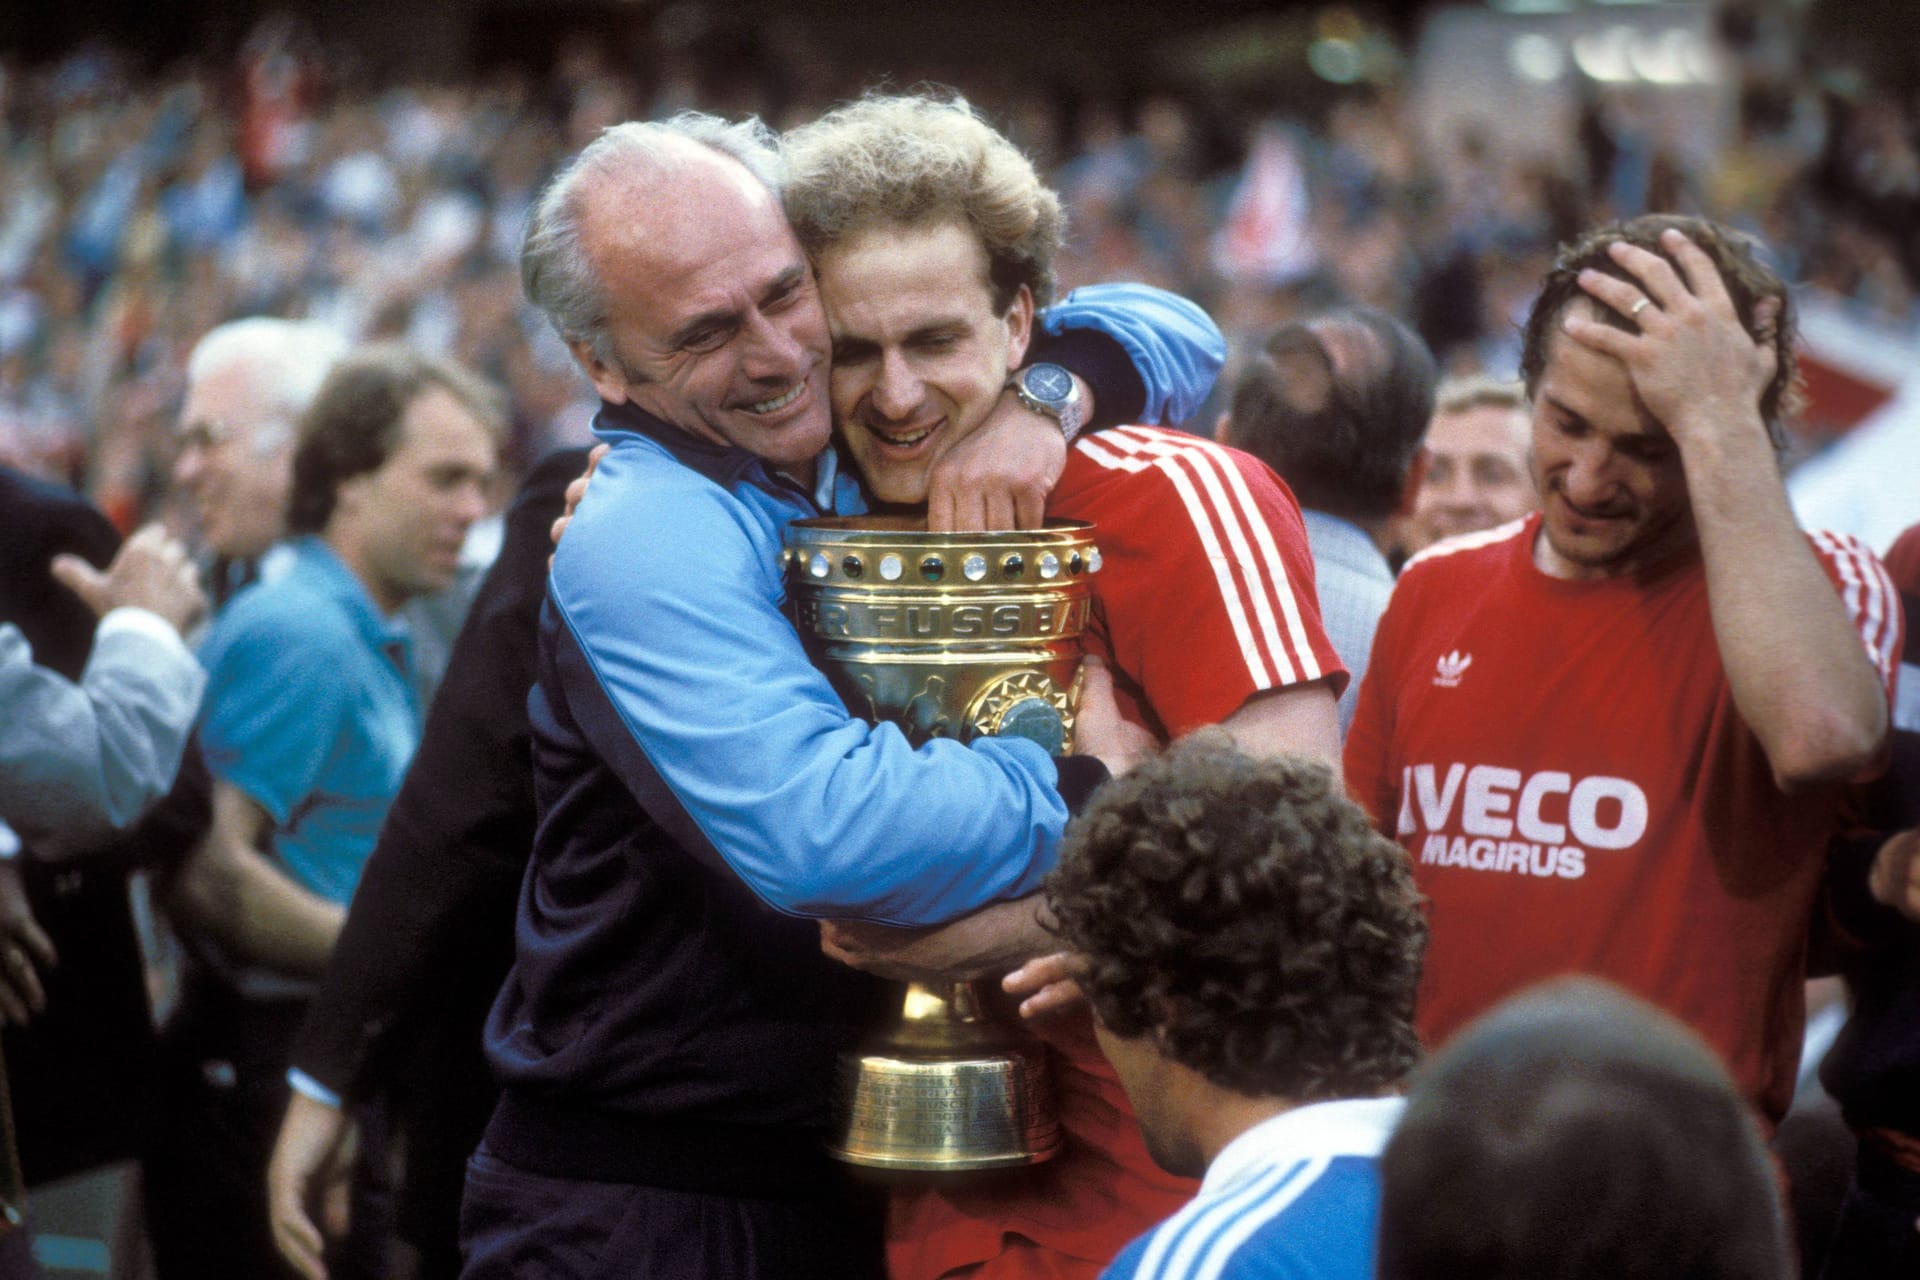 Pokalsieg im letzten Spiel für die Bayern: Am 31.05.1984 verabschiedet sich Rummenigge nach dem Erfolg gegen Borussia Mönchengladbach (8:7 n.E.) aus München. Zum Abschied wird er von Trainer Udo Lattek geherzt.